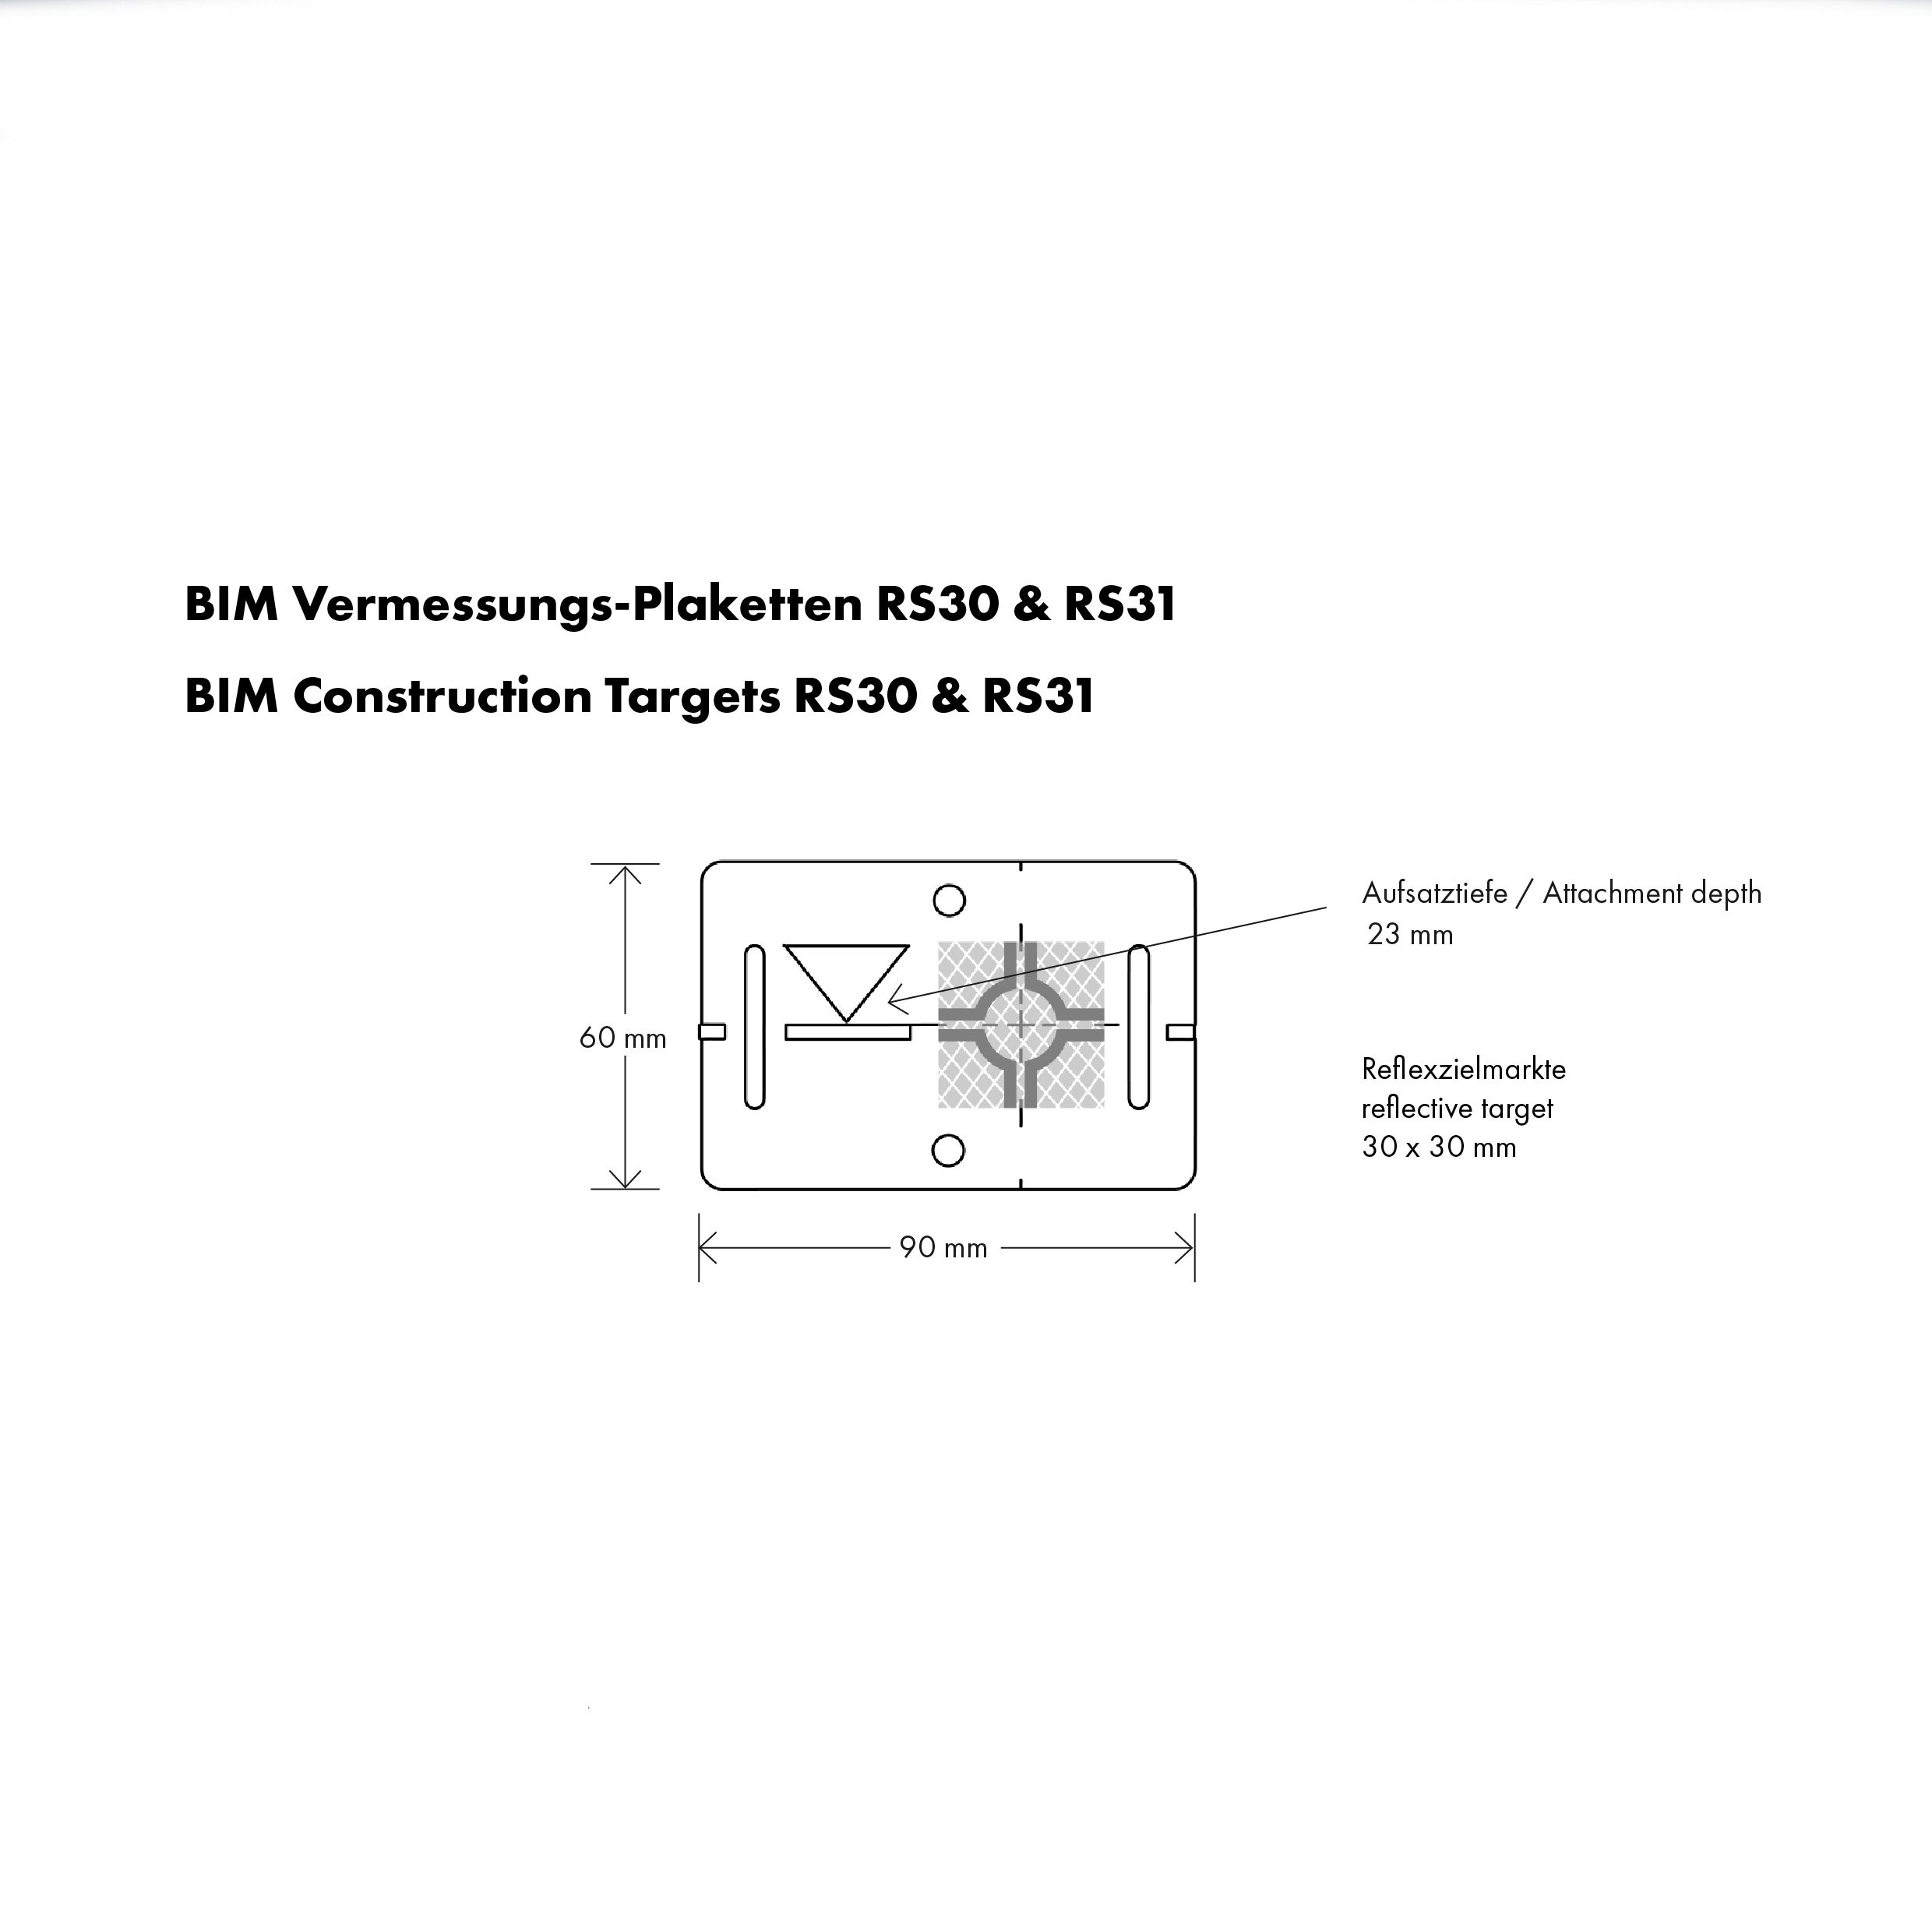 BIM Vermessungs-Plakette RS 31R, rot, selbstklebend mit Zielmarke